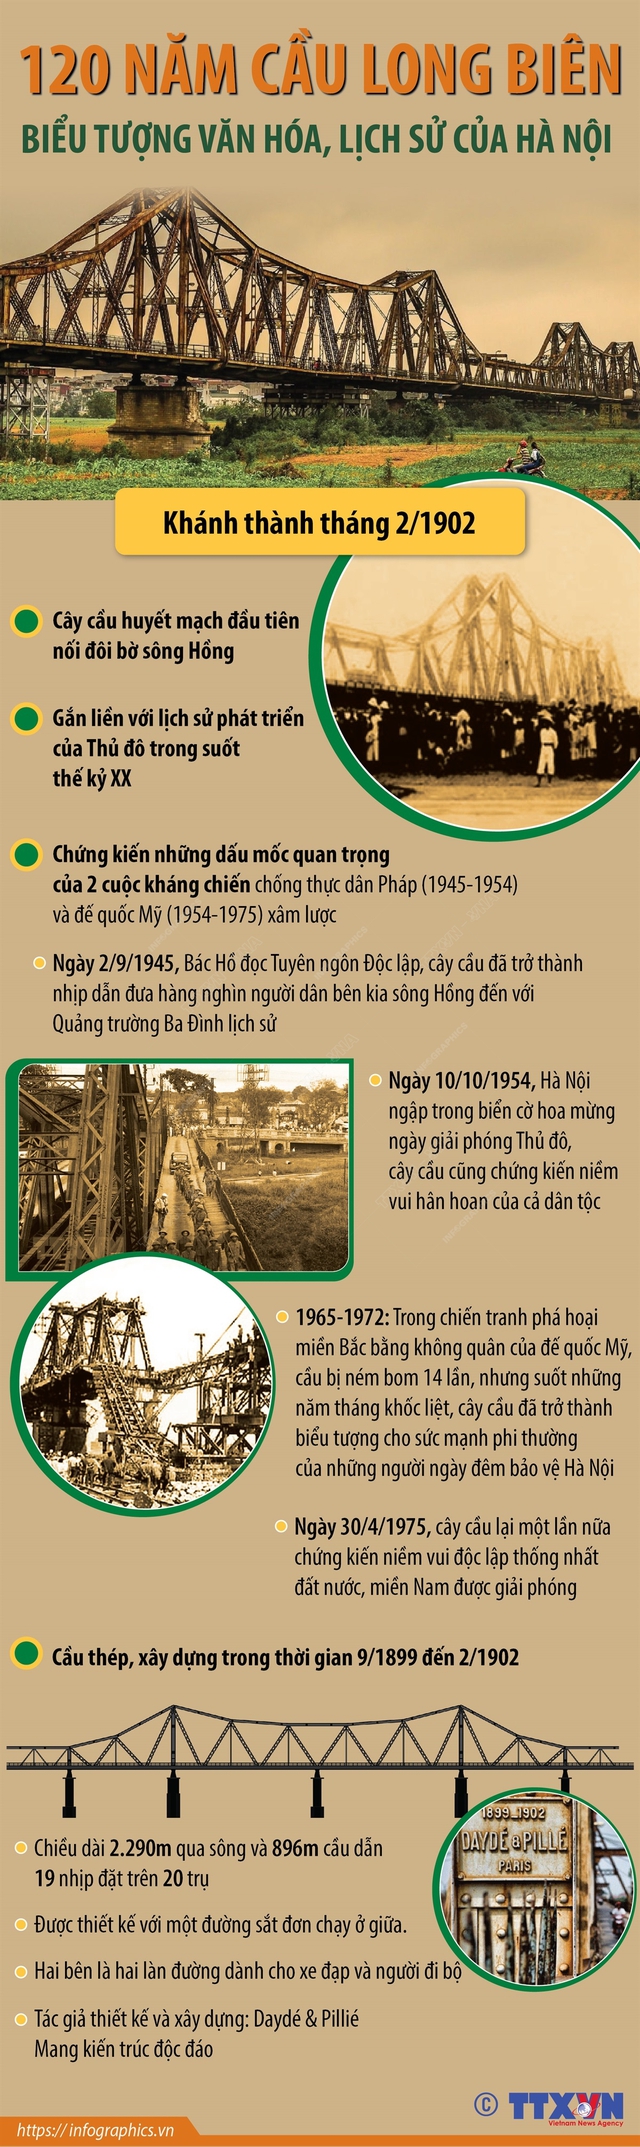 120 năm cầu Long Biên: Biểu tượng văn hóa, lịch sử của Hà Nội - Ảnh 1.